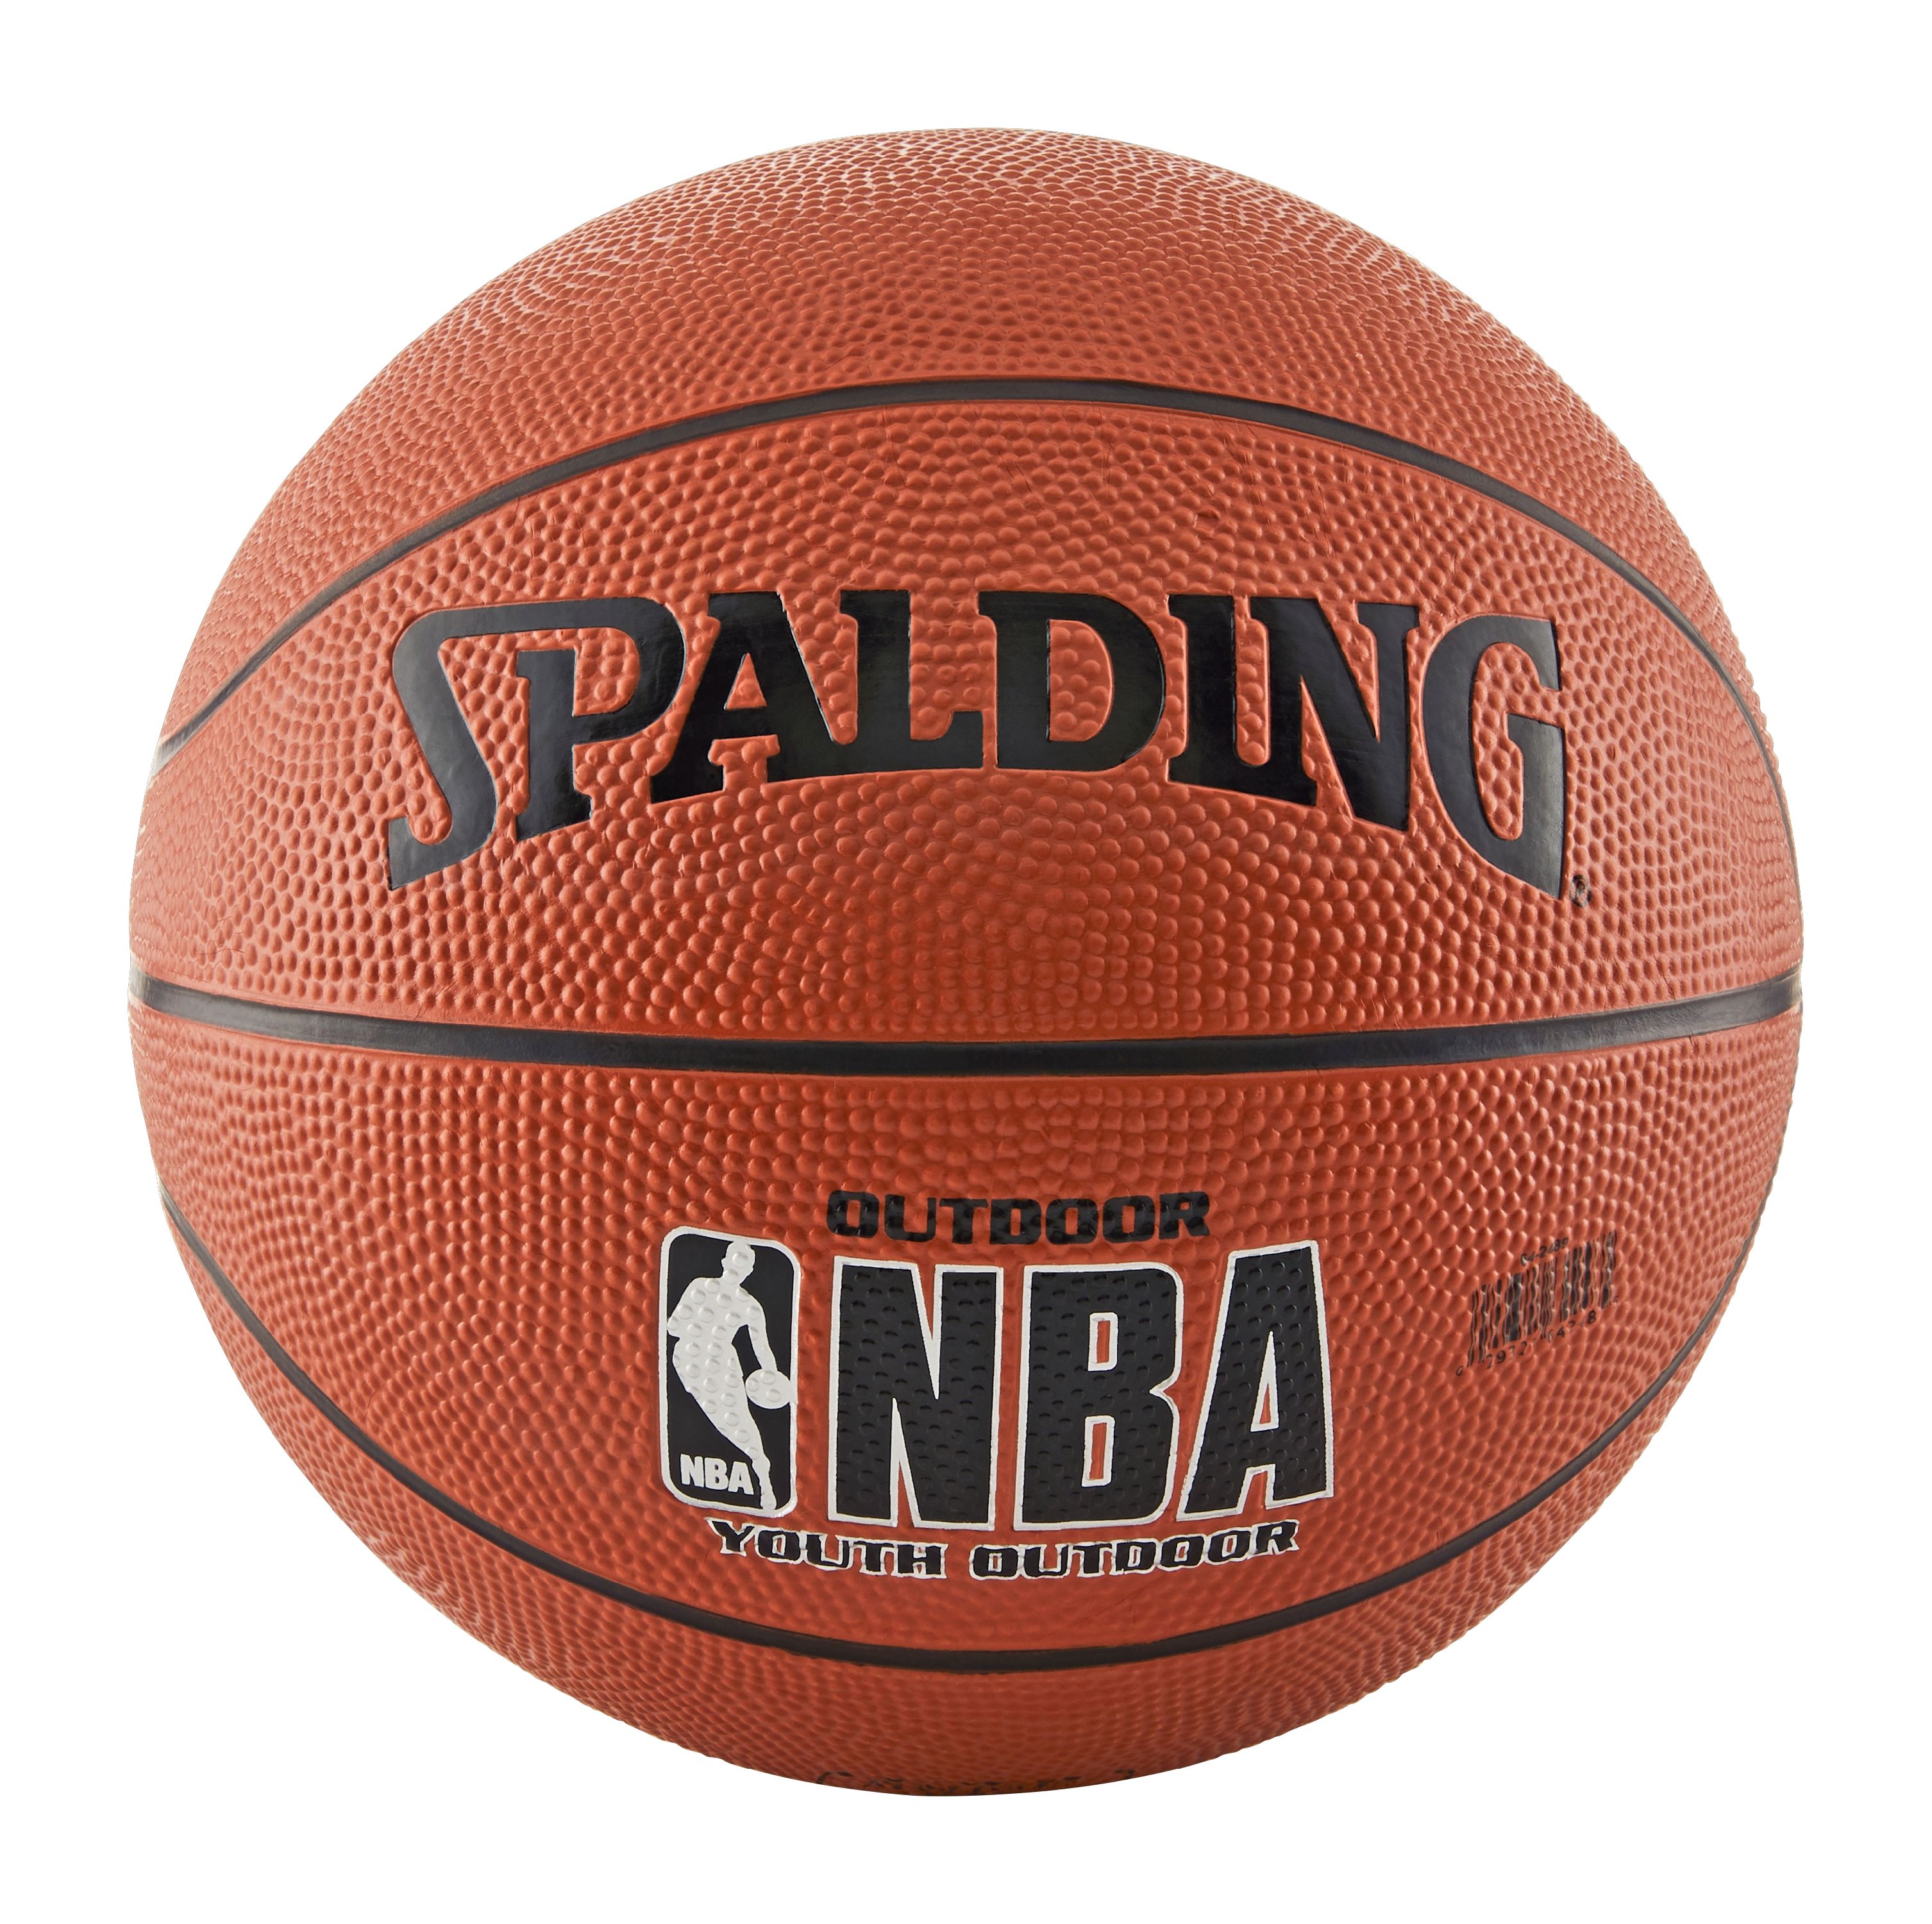 Spalding NBA Varsity Basketball, Youth Size (27.5") - image 3 of 4